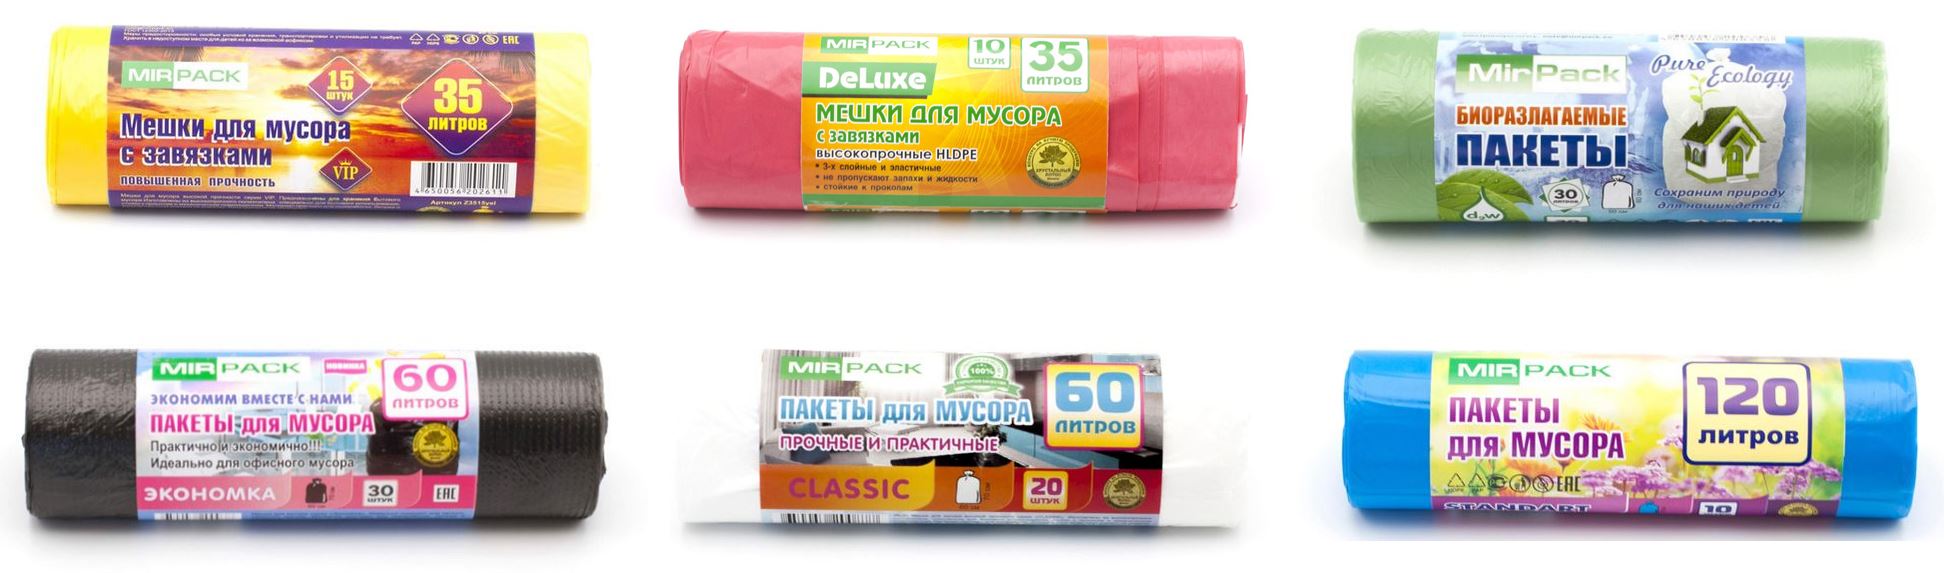 Цветные пакеты для мусора MIRPACK